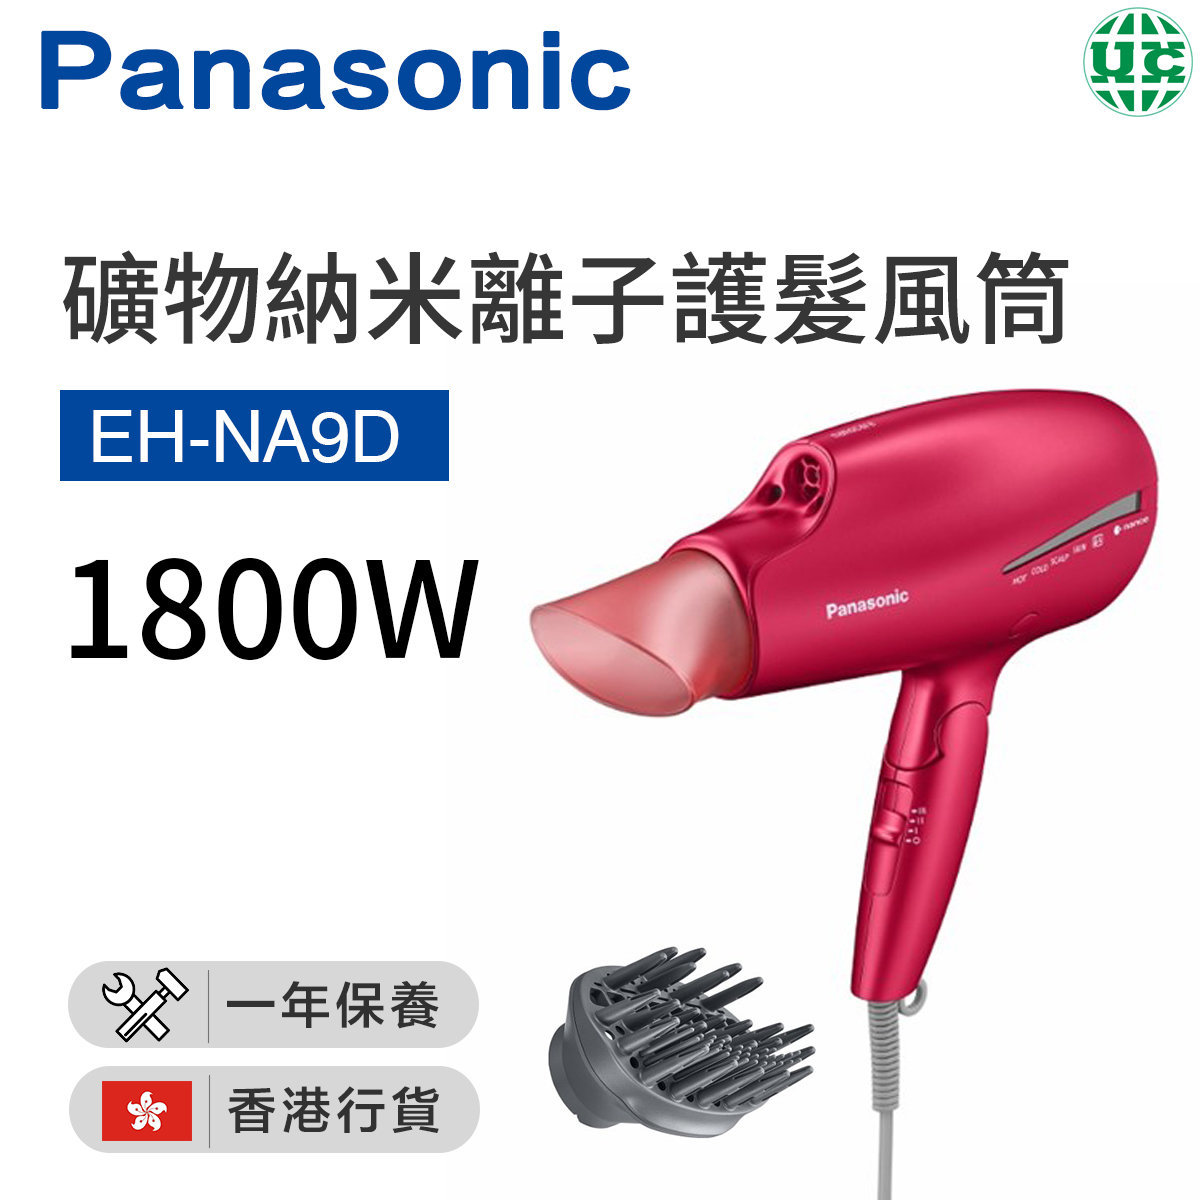 EH-NA9D 護髮風筒 1800W【香港行貨】